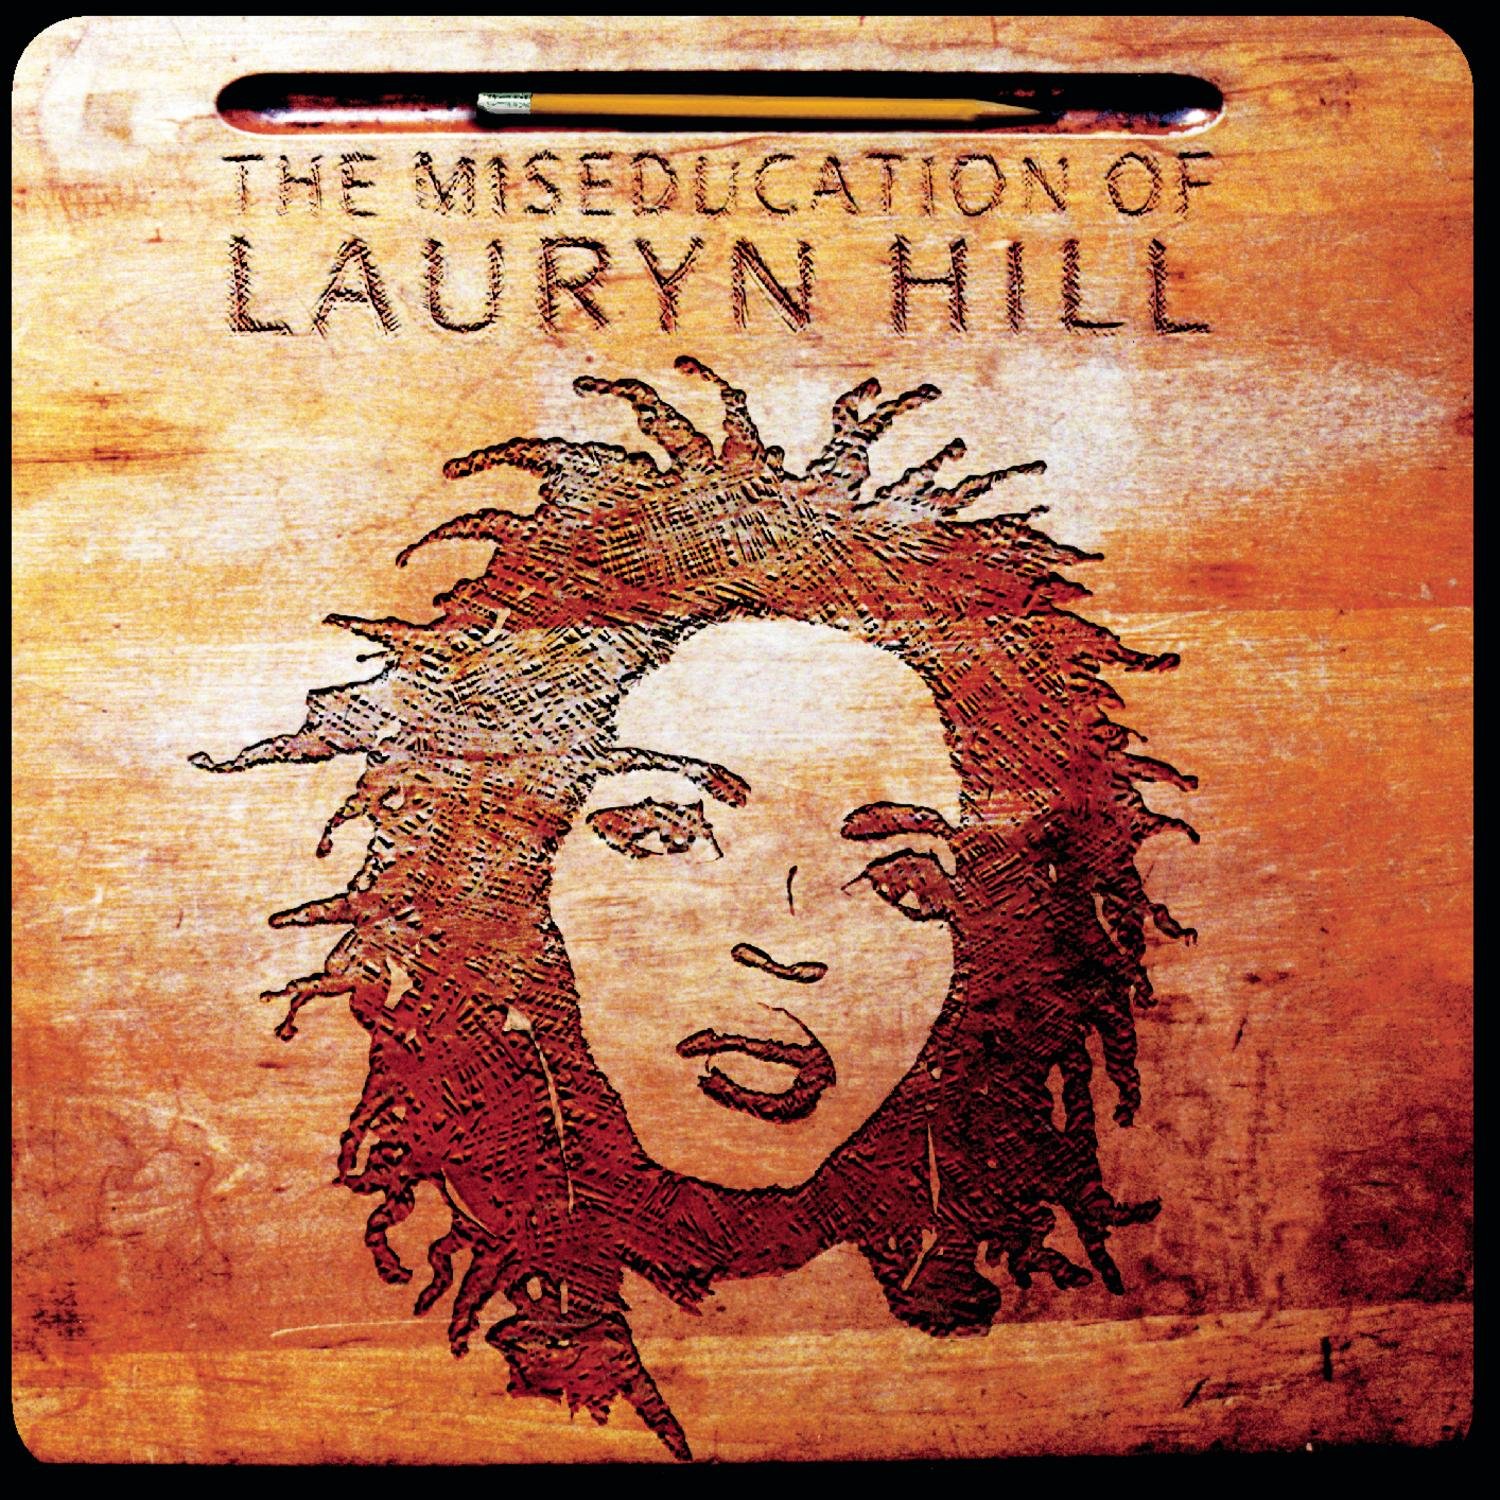 Lauryn Hill "The Miseducation of Lauryn Hill" LP